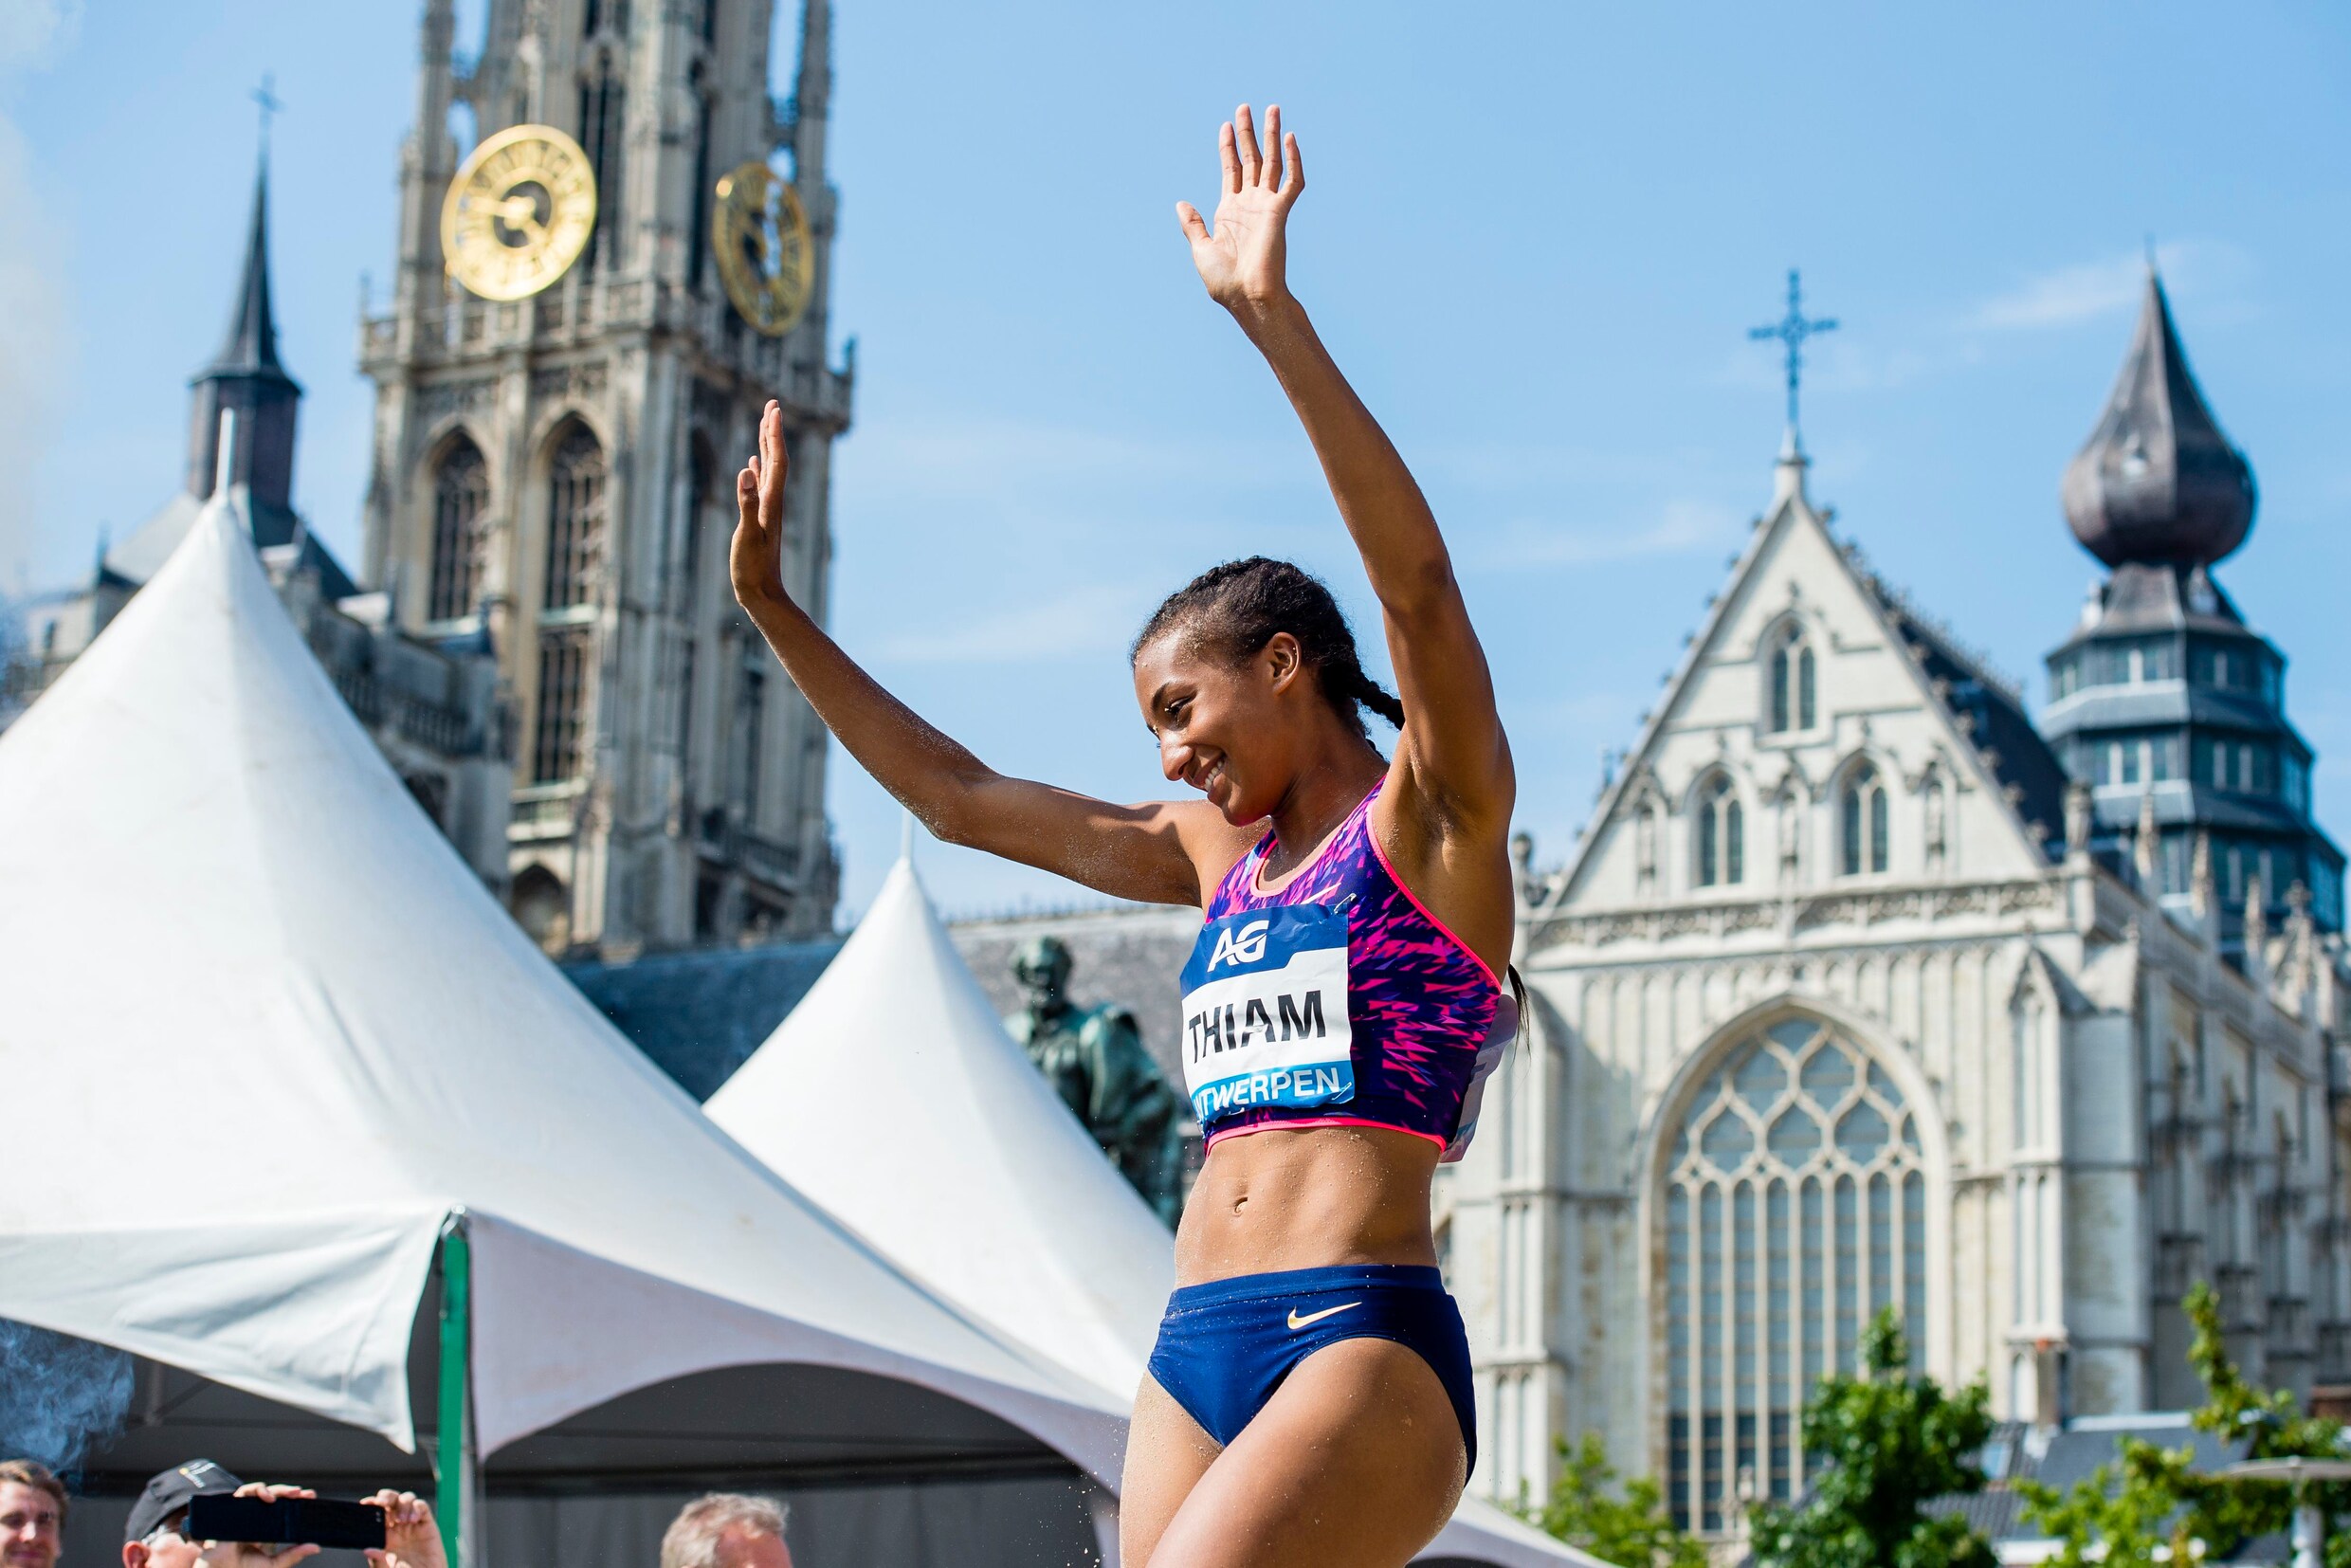 Thiam spingt bij comeback op Antwerpse Groenplaats tot op 9 cm van Spelen in Rio